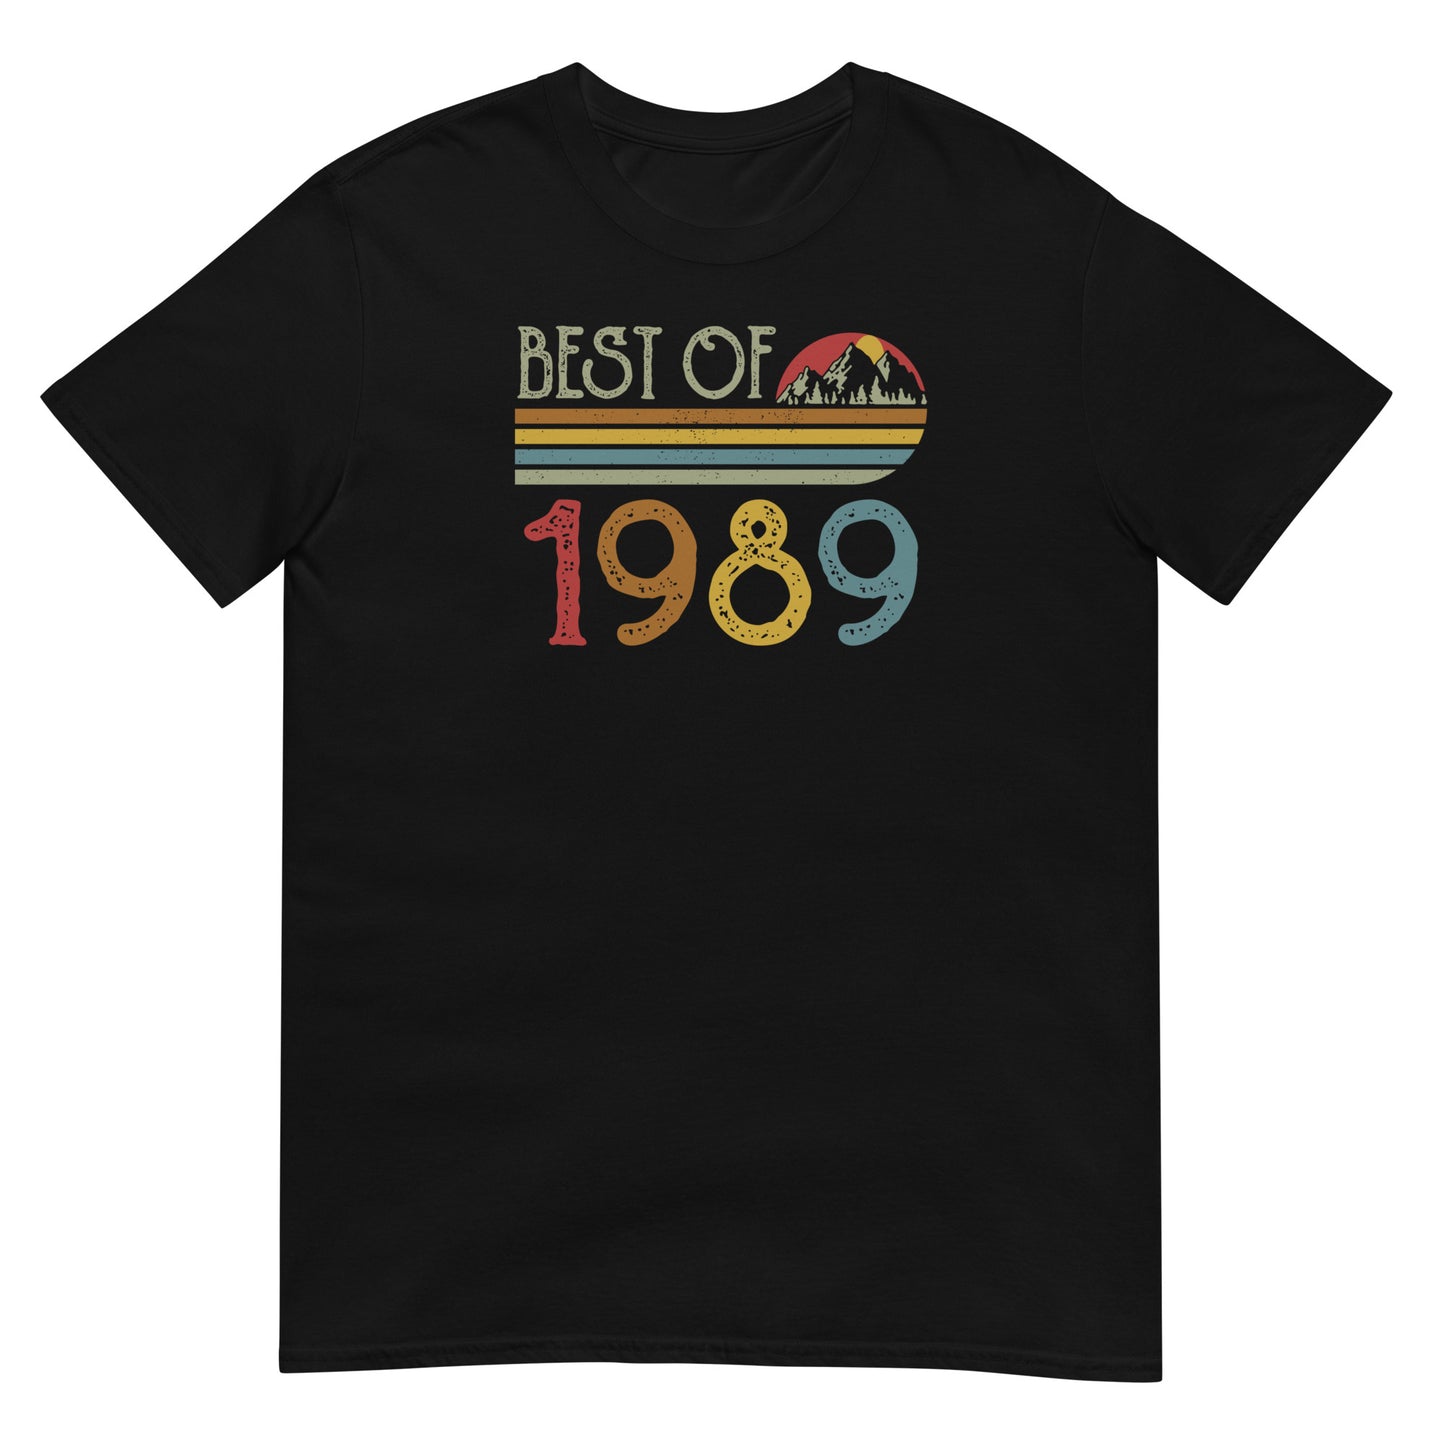 Camiseta Best Of 1989 - Cumpleaños